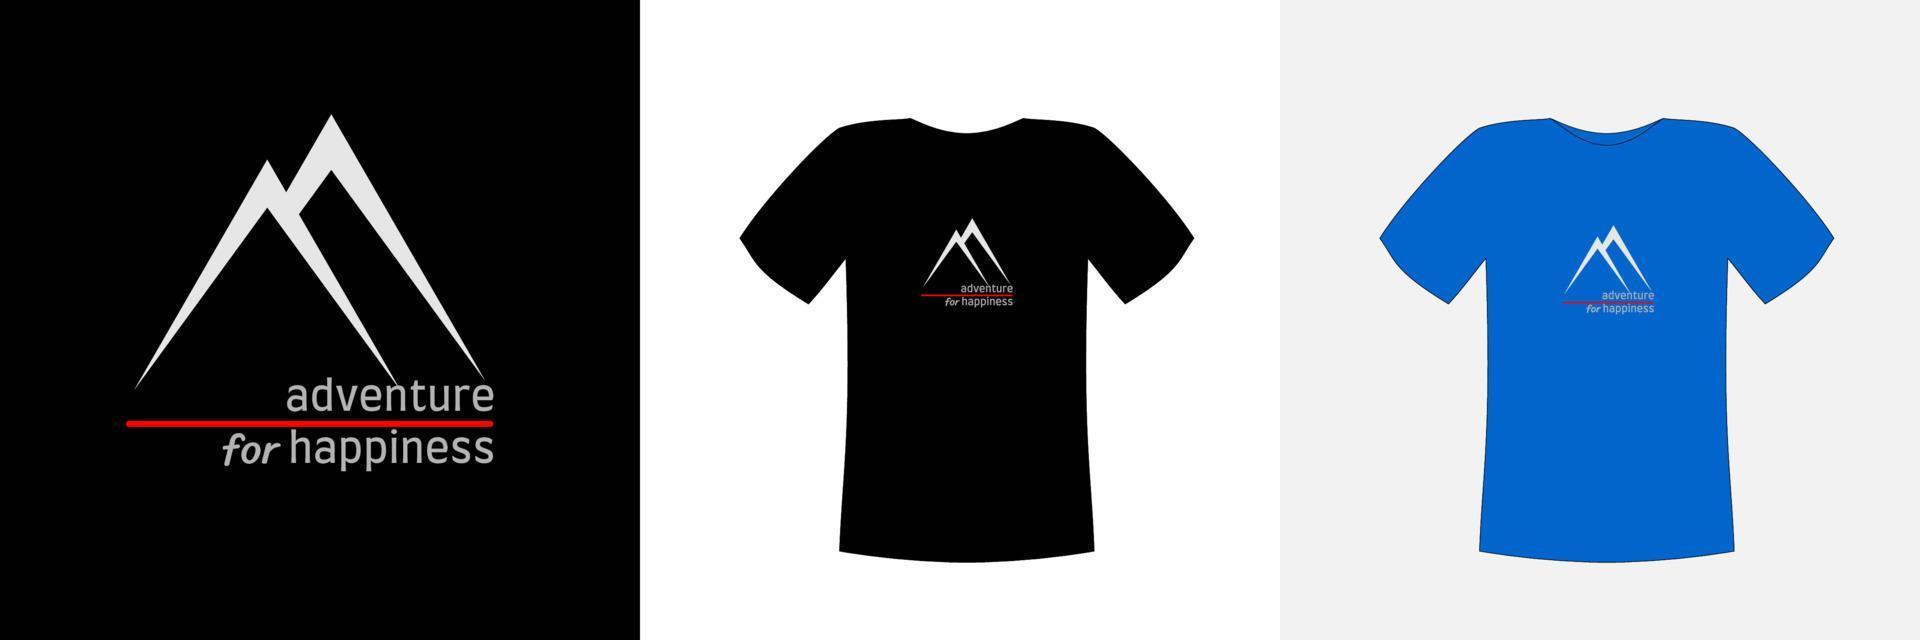 t-shirt ontwerp vector, met een witte twee bergen illustratie vorm op een donkere doek met het tekst avontuur voor geluk, kan worden aangepast voor verschillende achtergrondkleuren vector